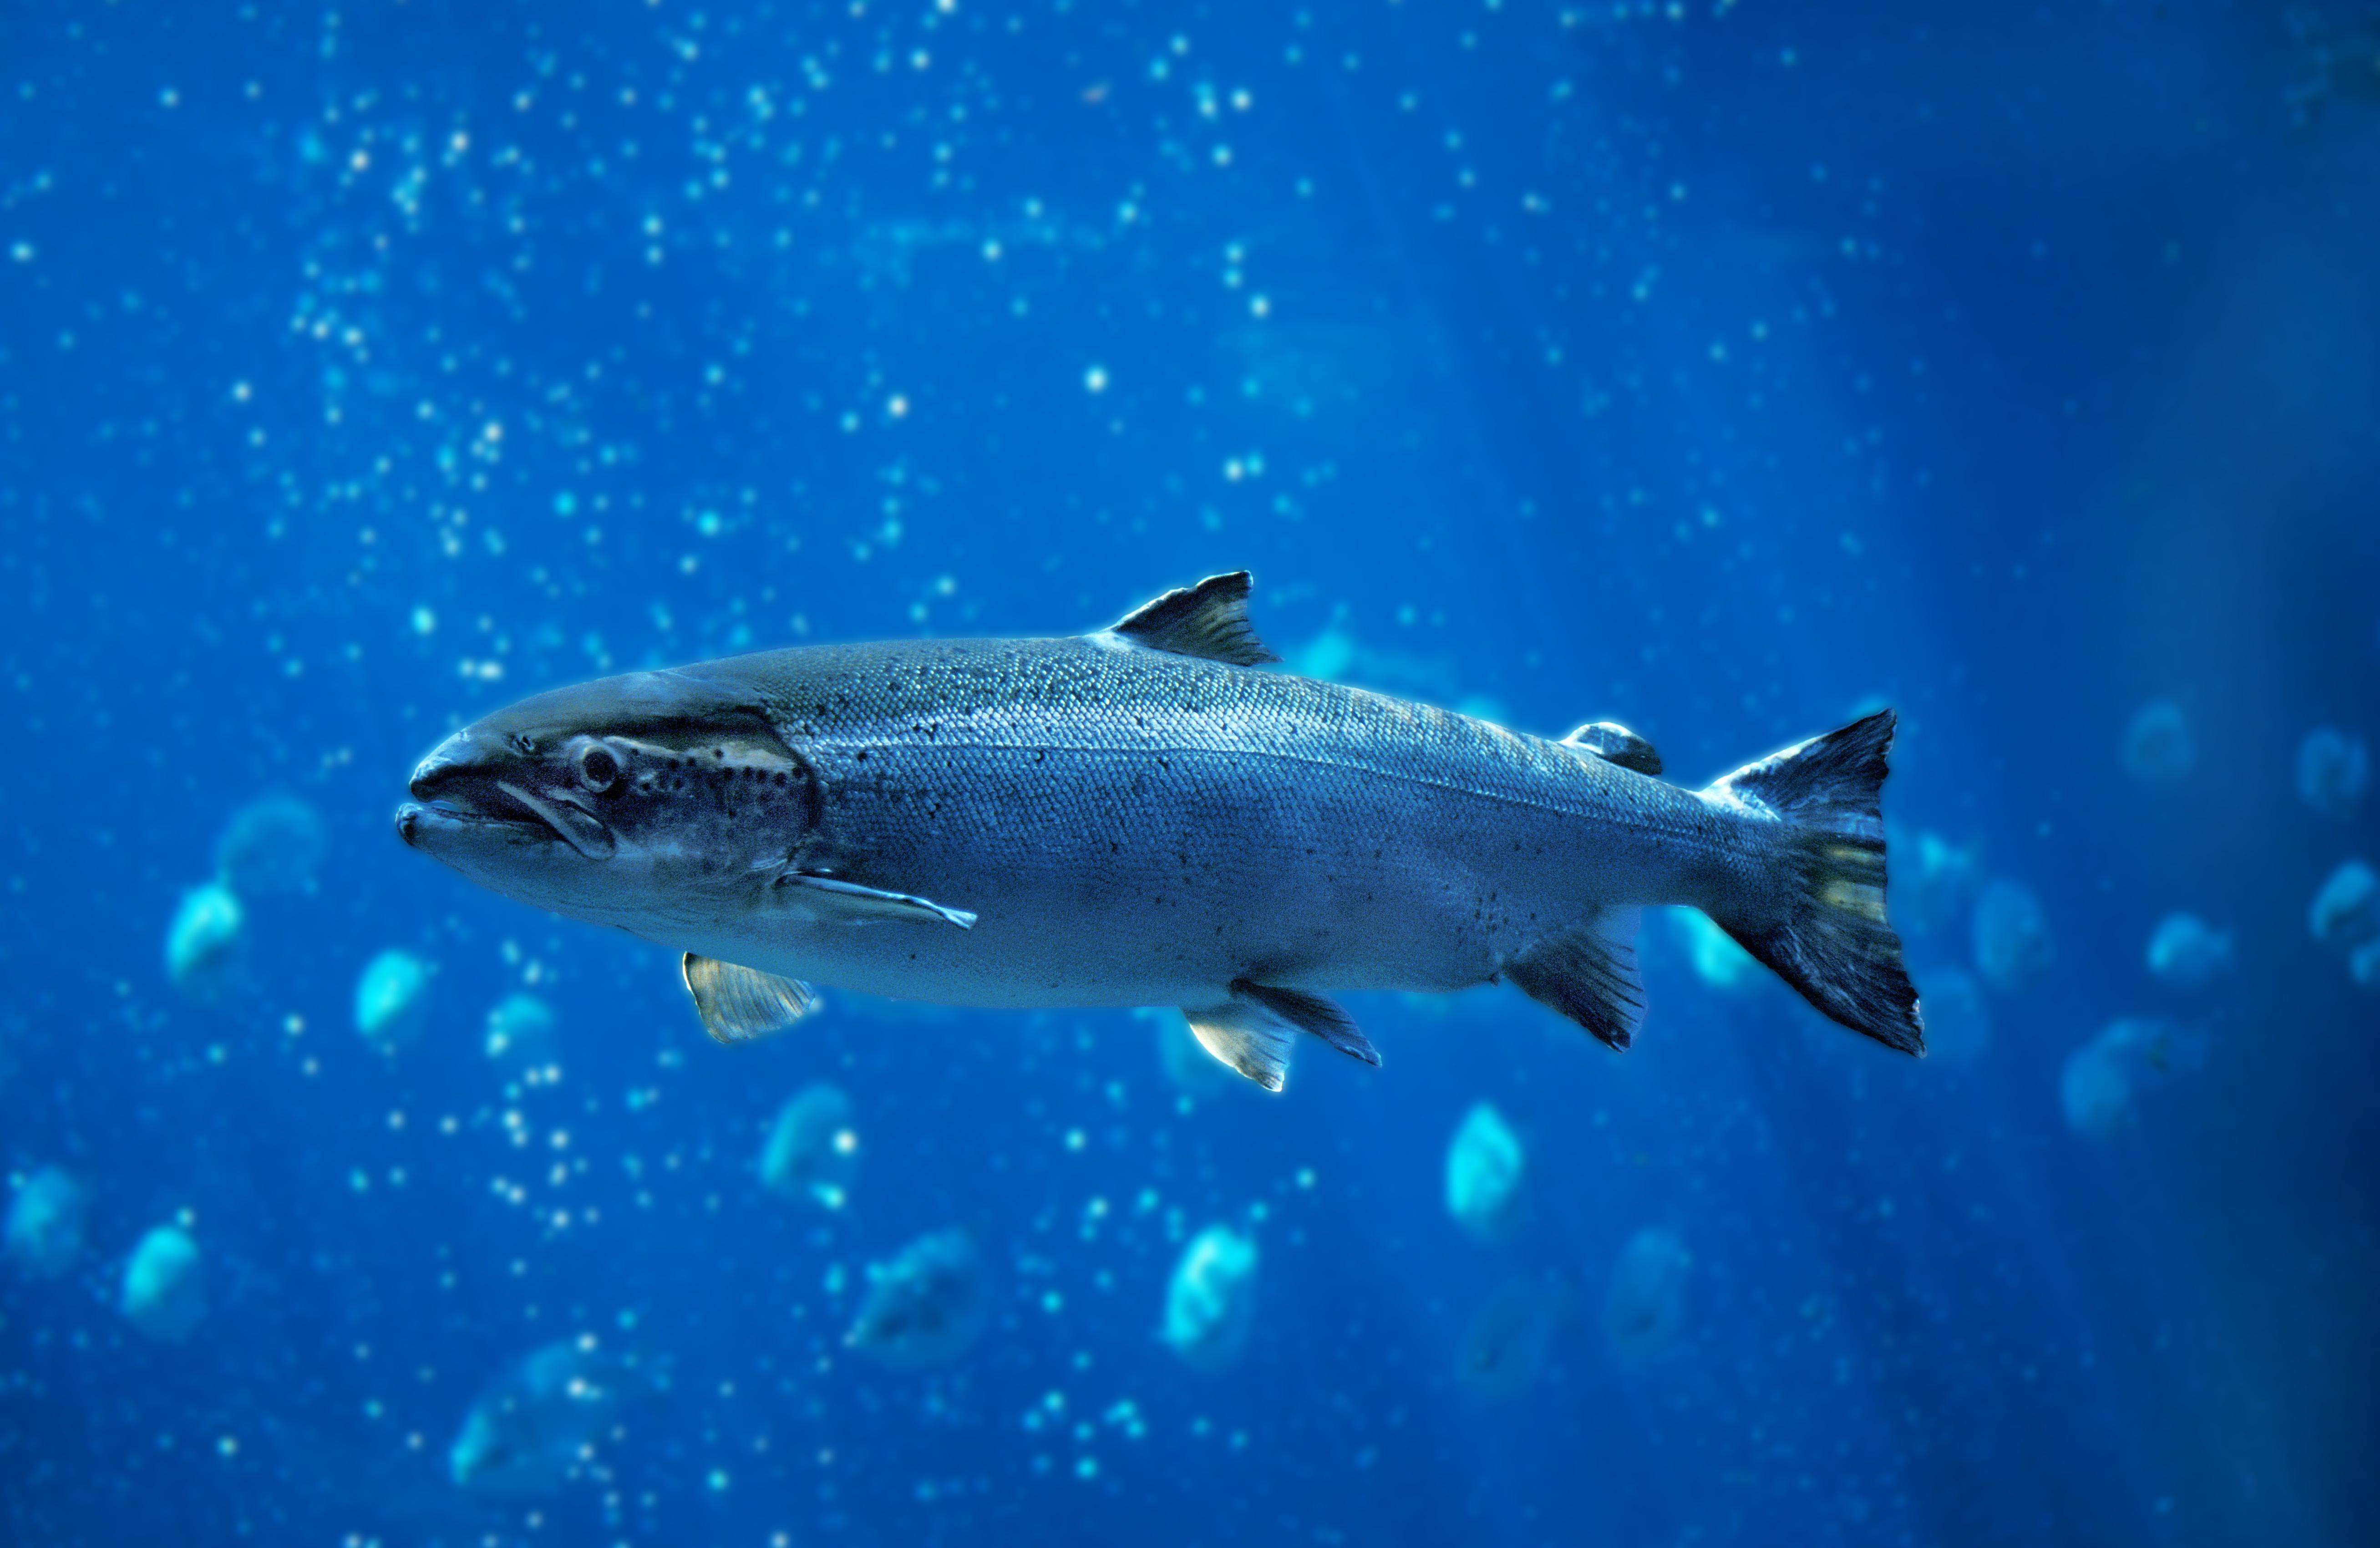 Single salmon fish swimming in blue water.